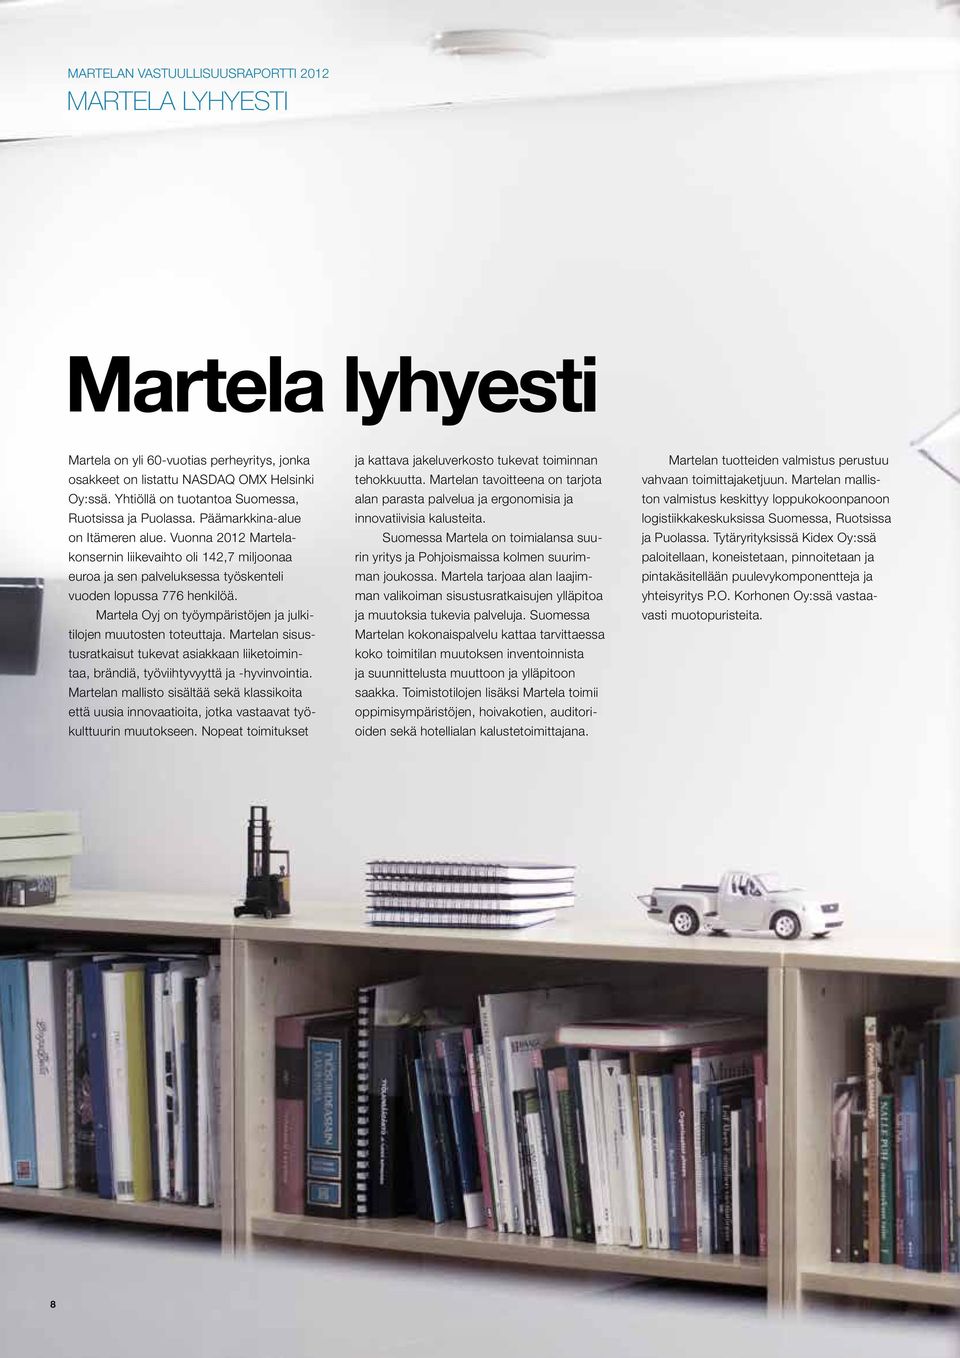 Martela Oyj on työympäristöjen ja julkitilojen muutosten toteuttaja. Martelan sisustusratkaisut tukevat asiakkaan liiketoimintaa, brändiä, työviihtyvyyttä ja -hyvinvointia.